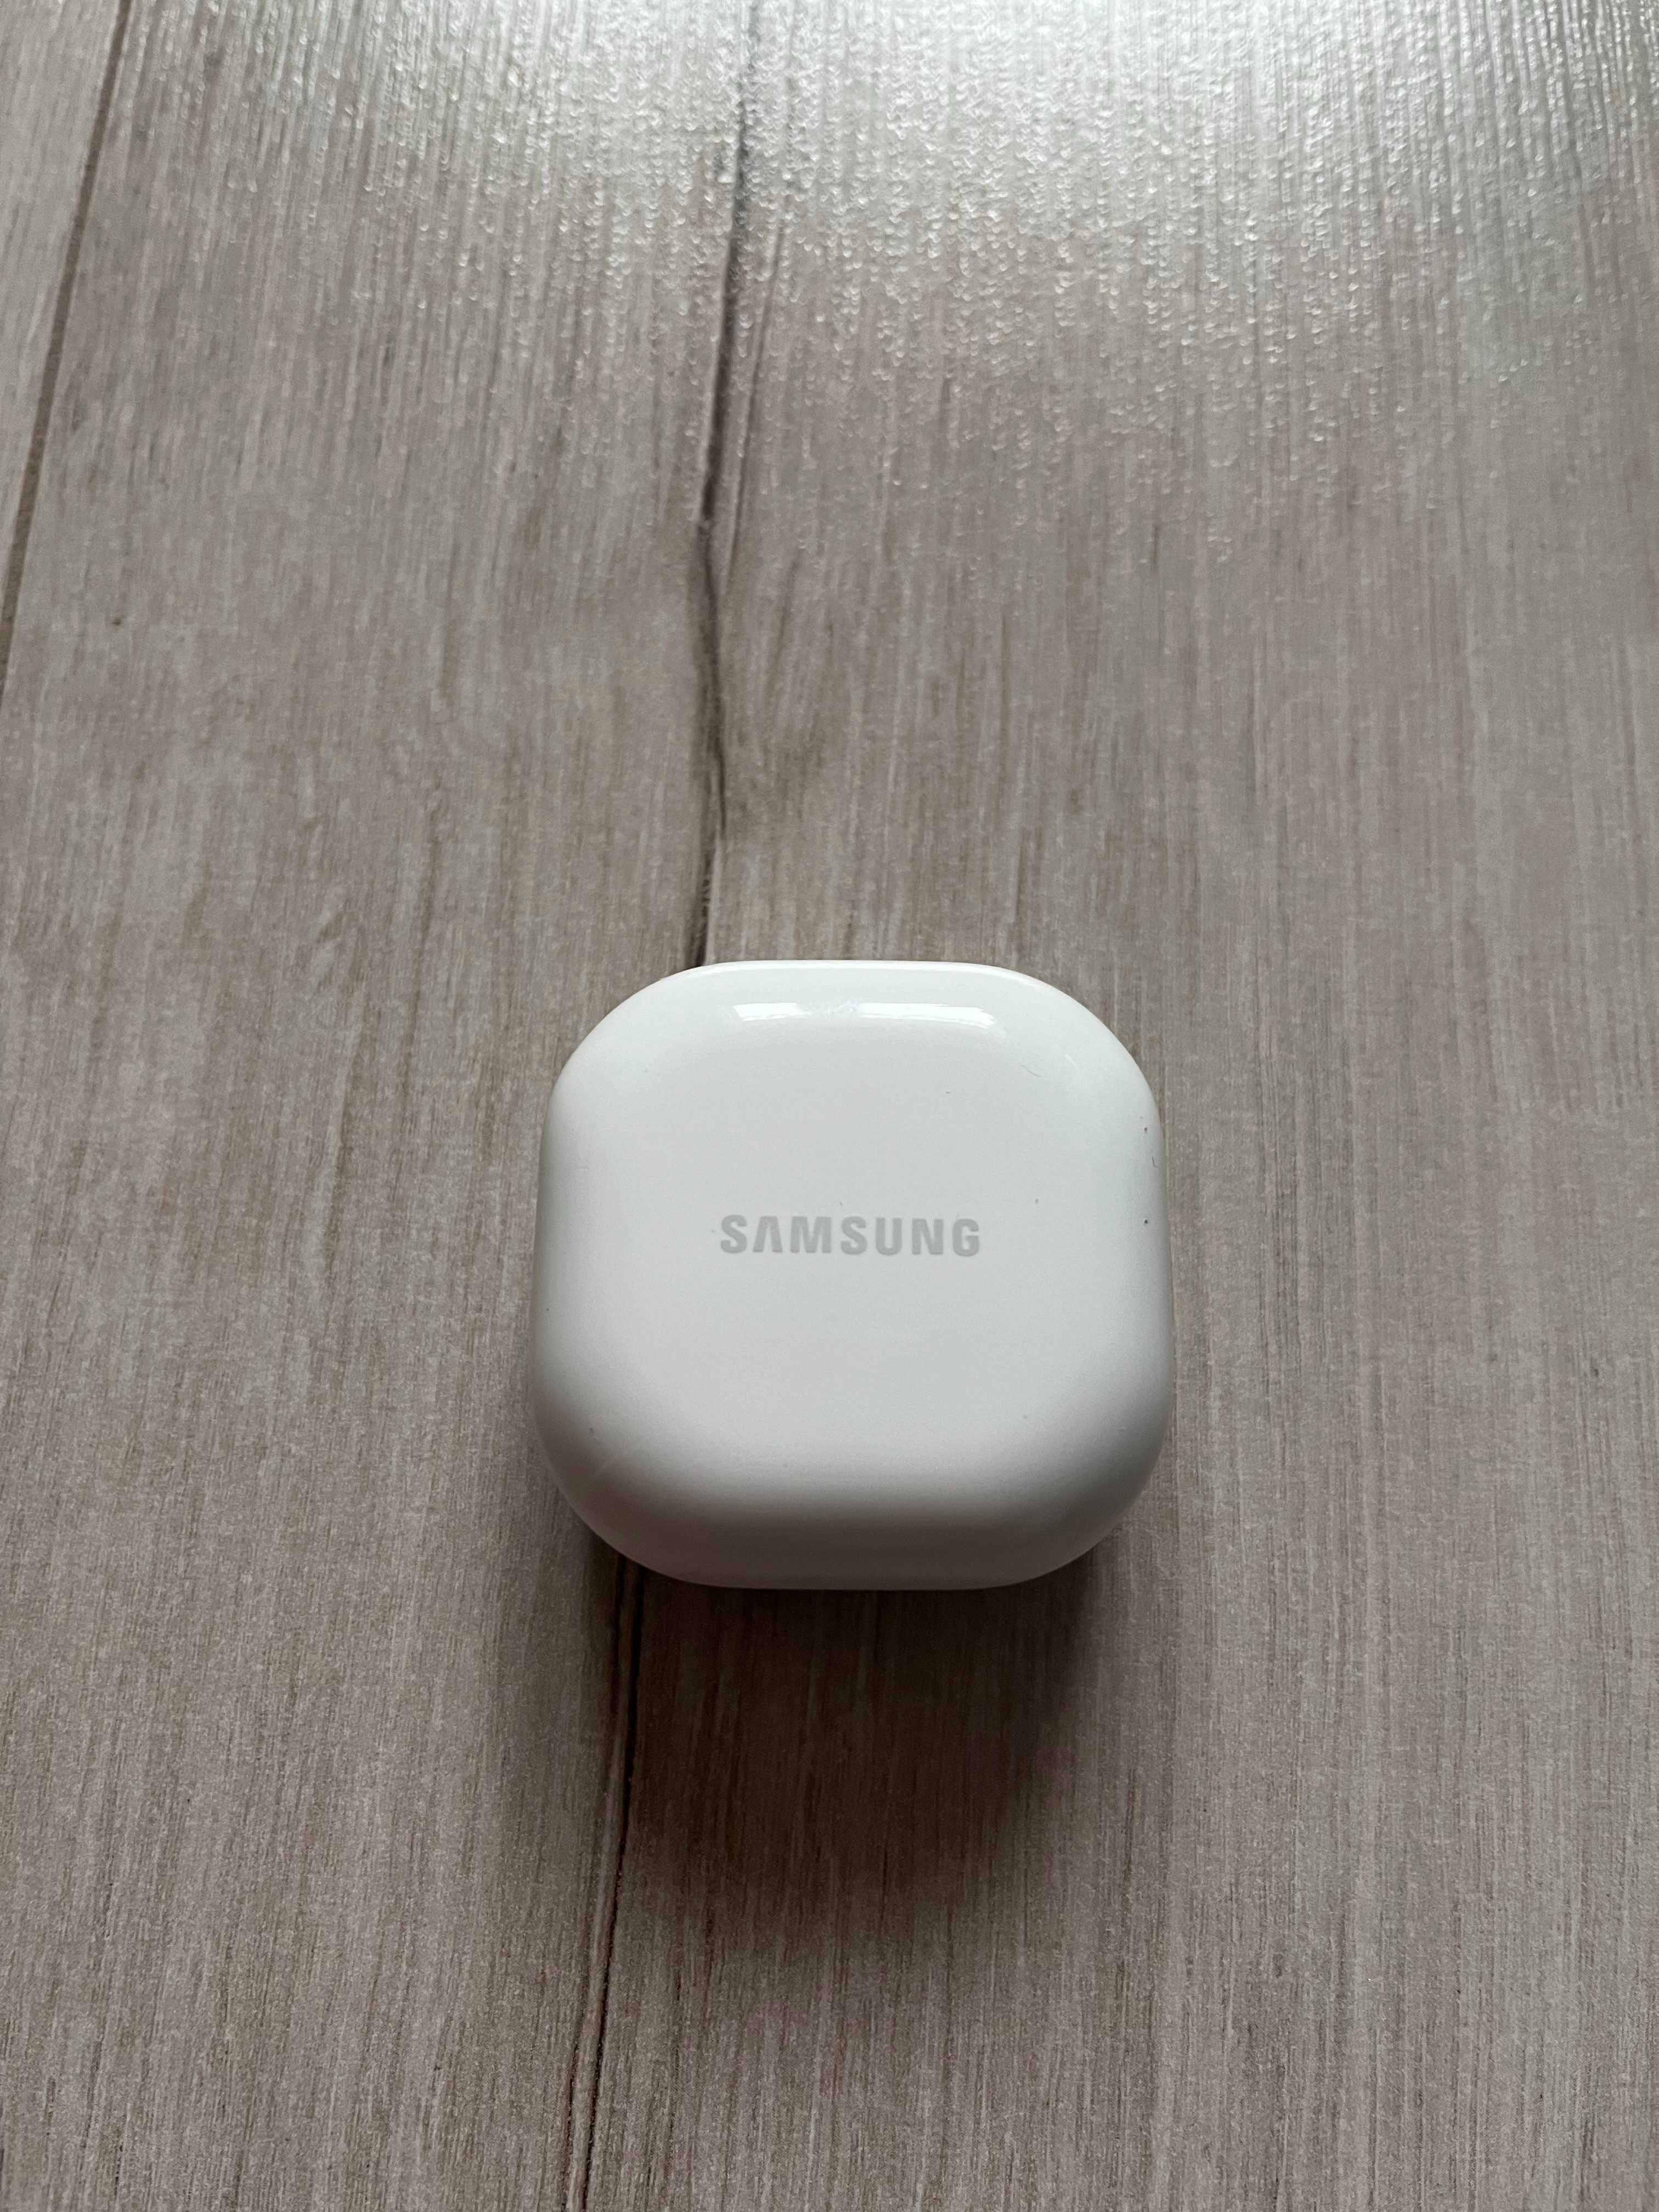 Samsung Galaxy Buds 2 etui ładujące